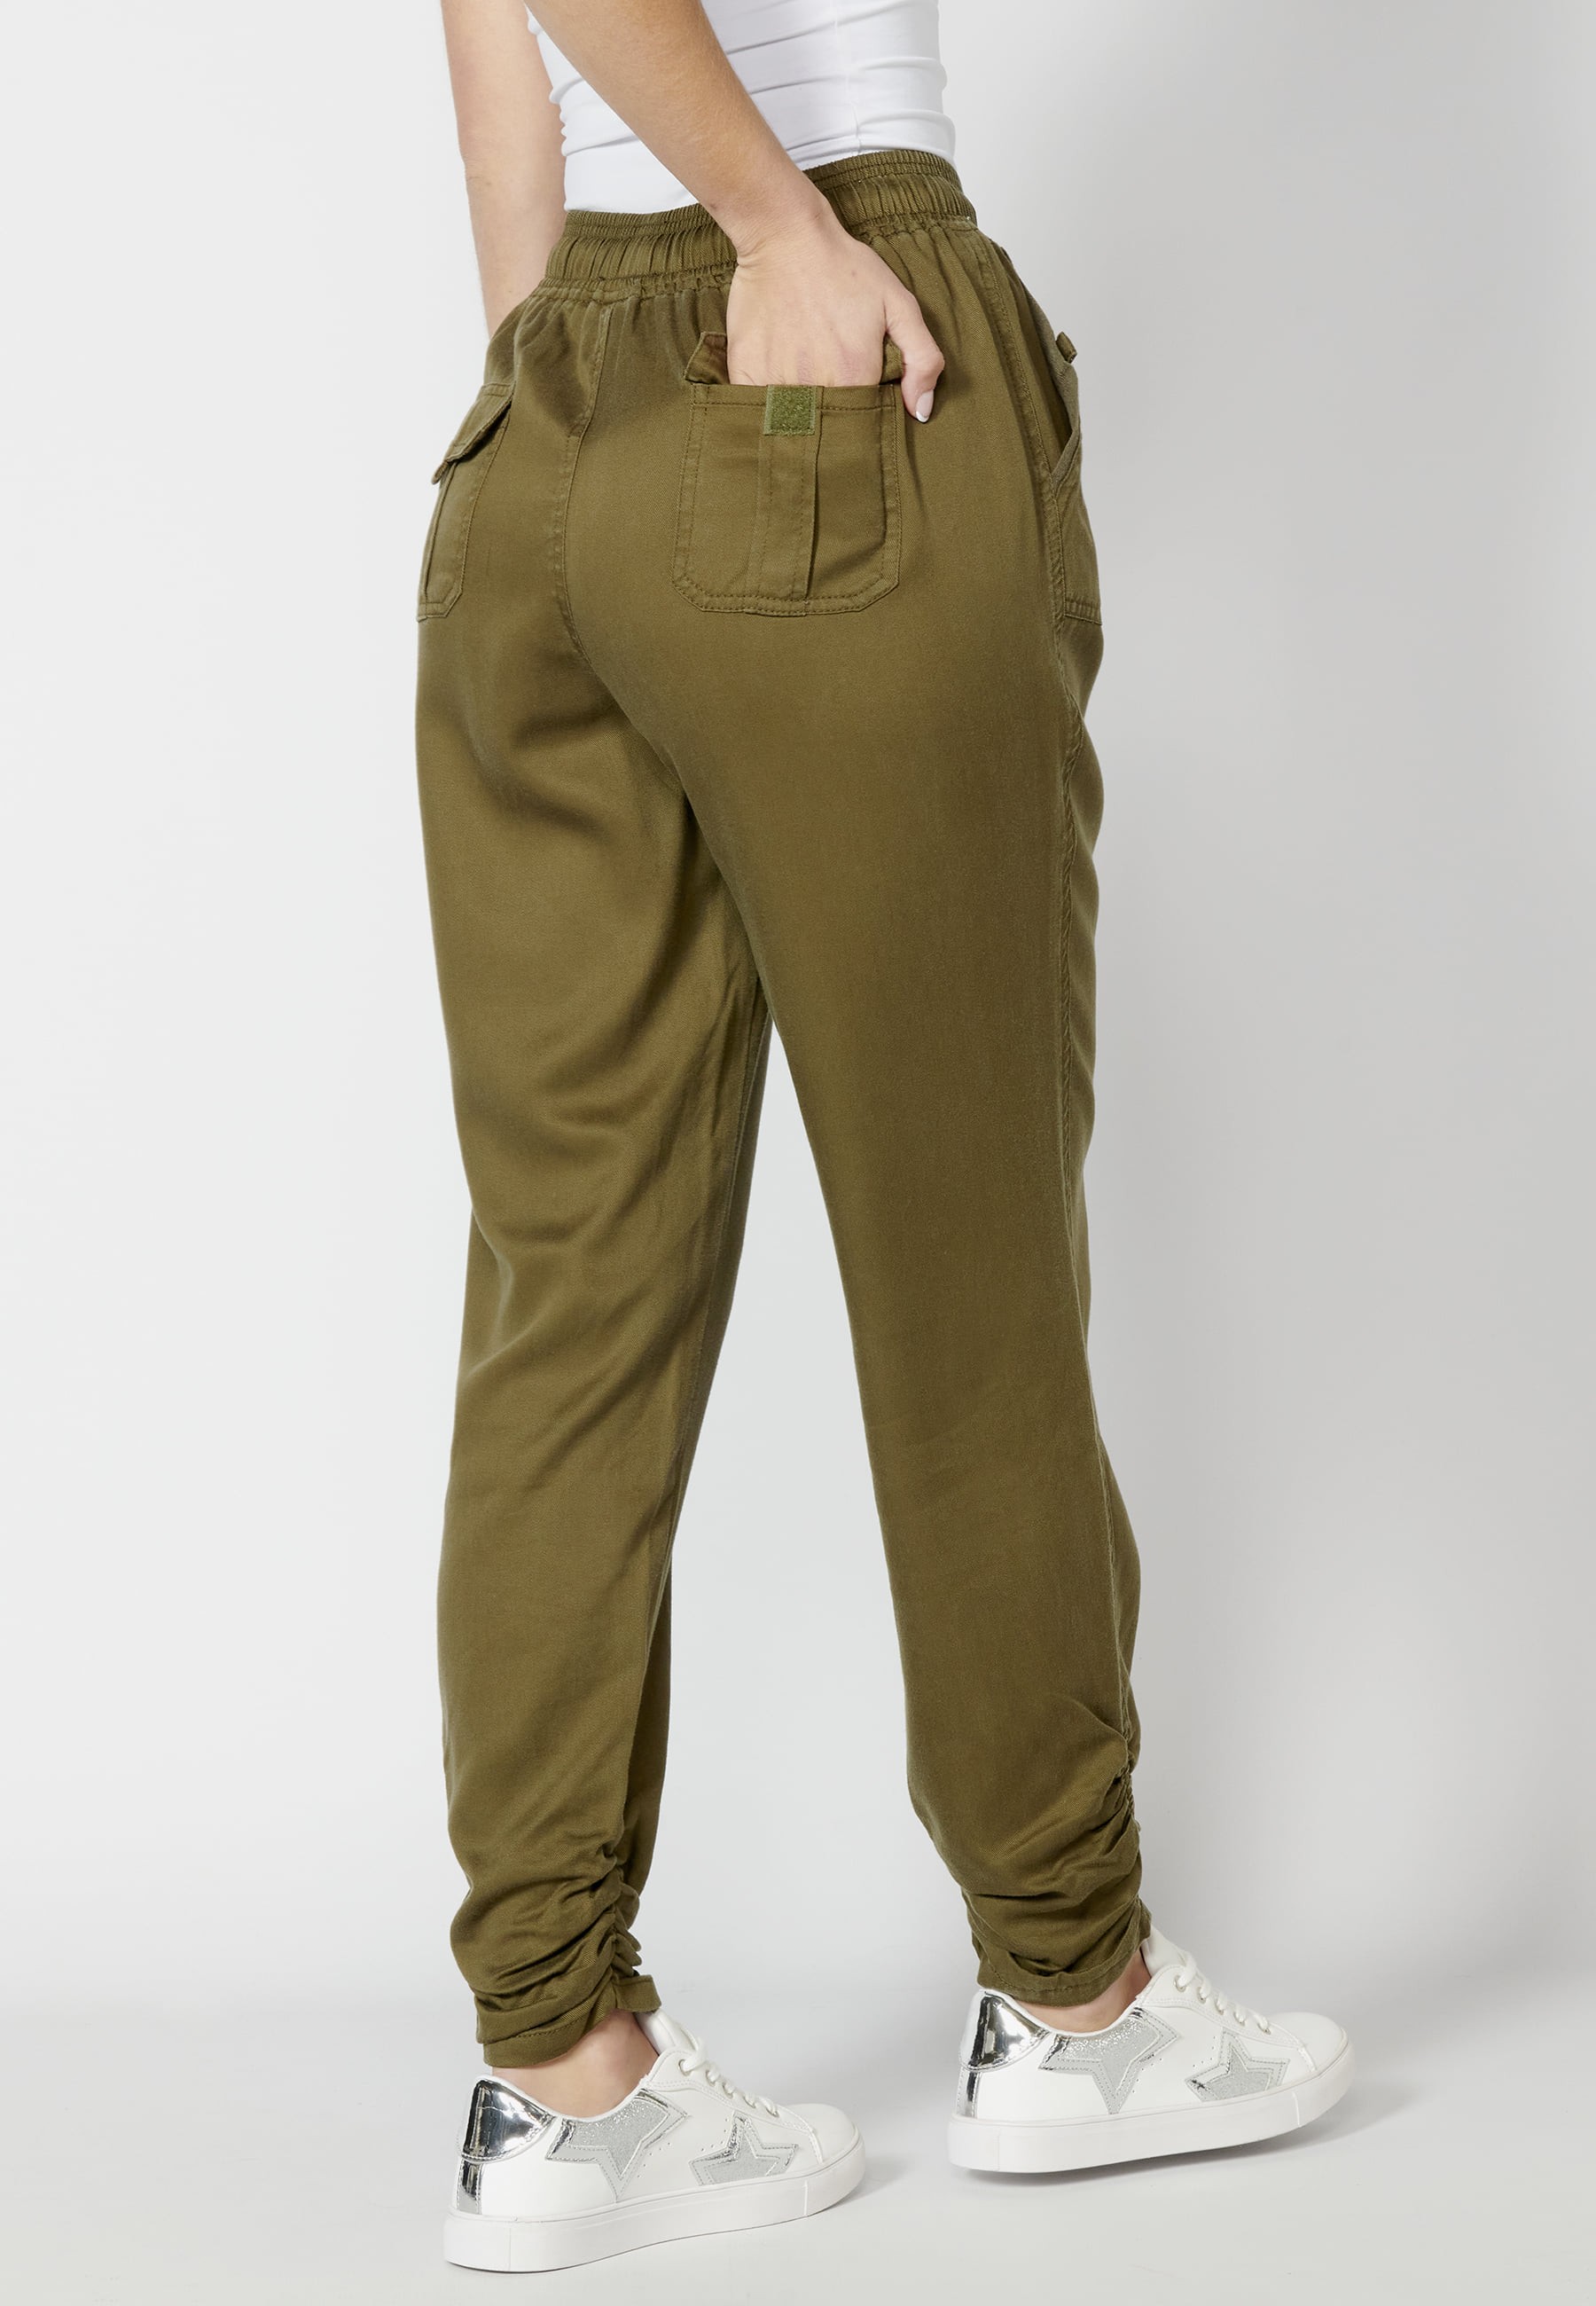 Pantalon long avec taille ajustable Couleur Kaki pour Femme 2